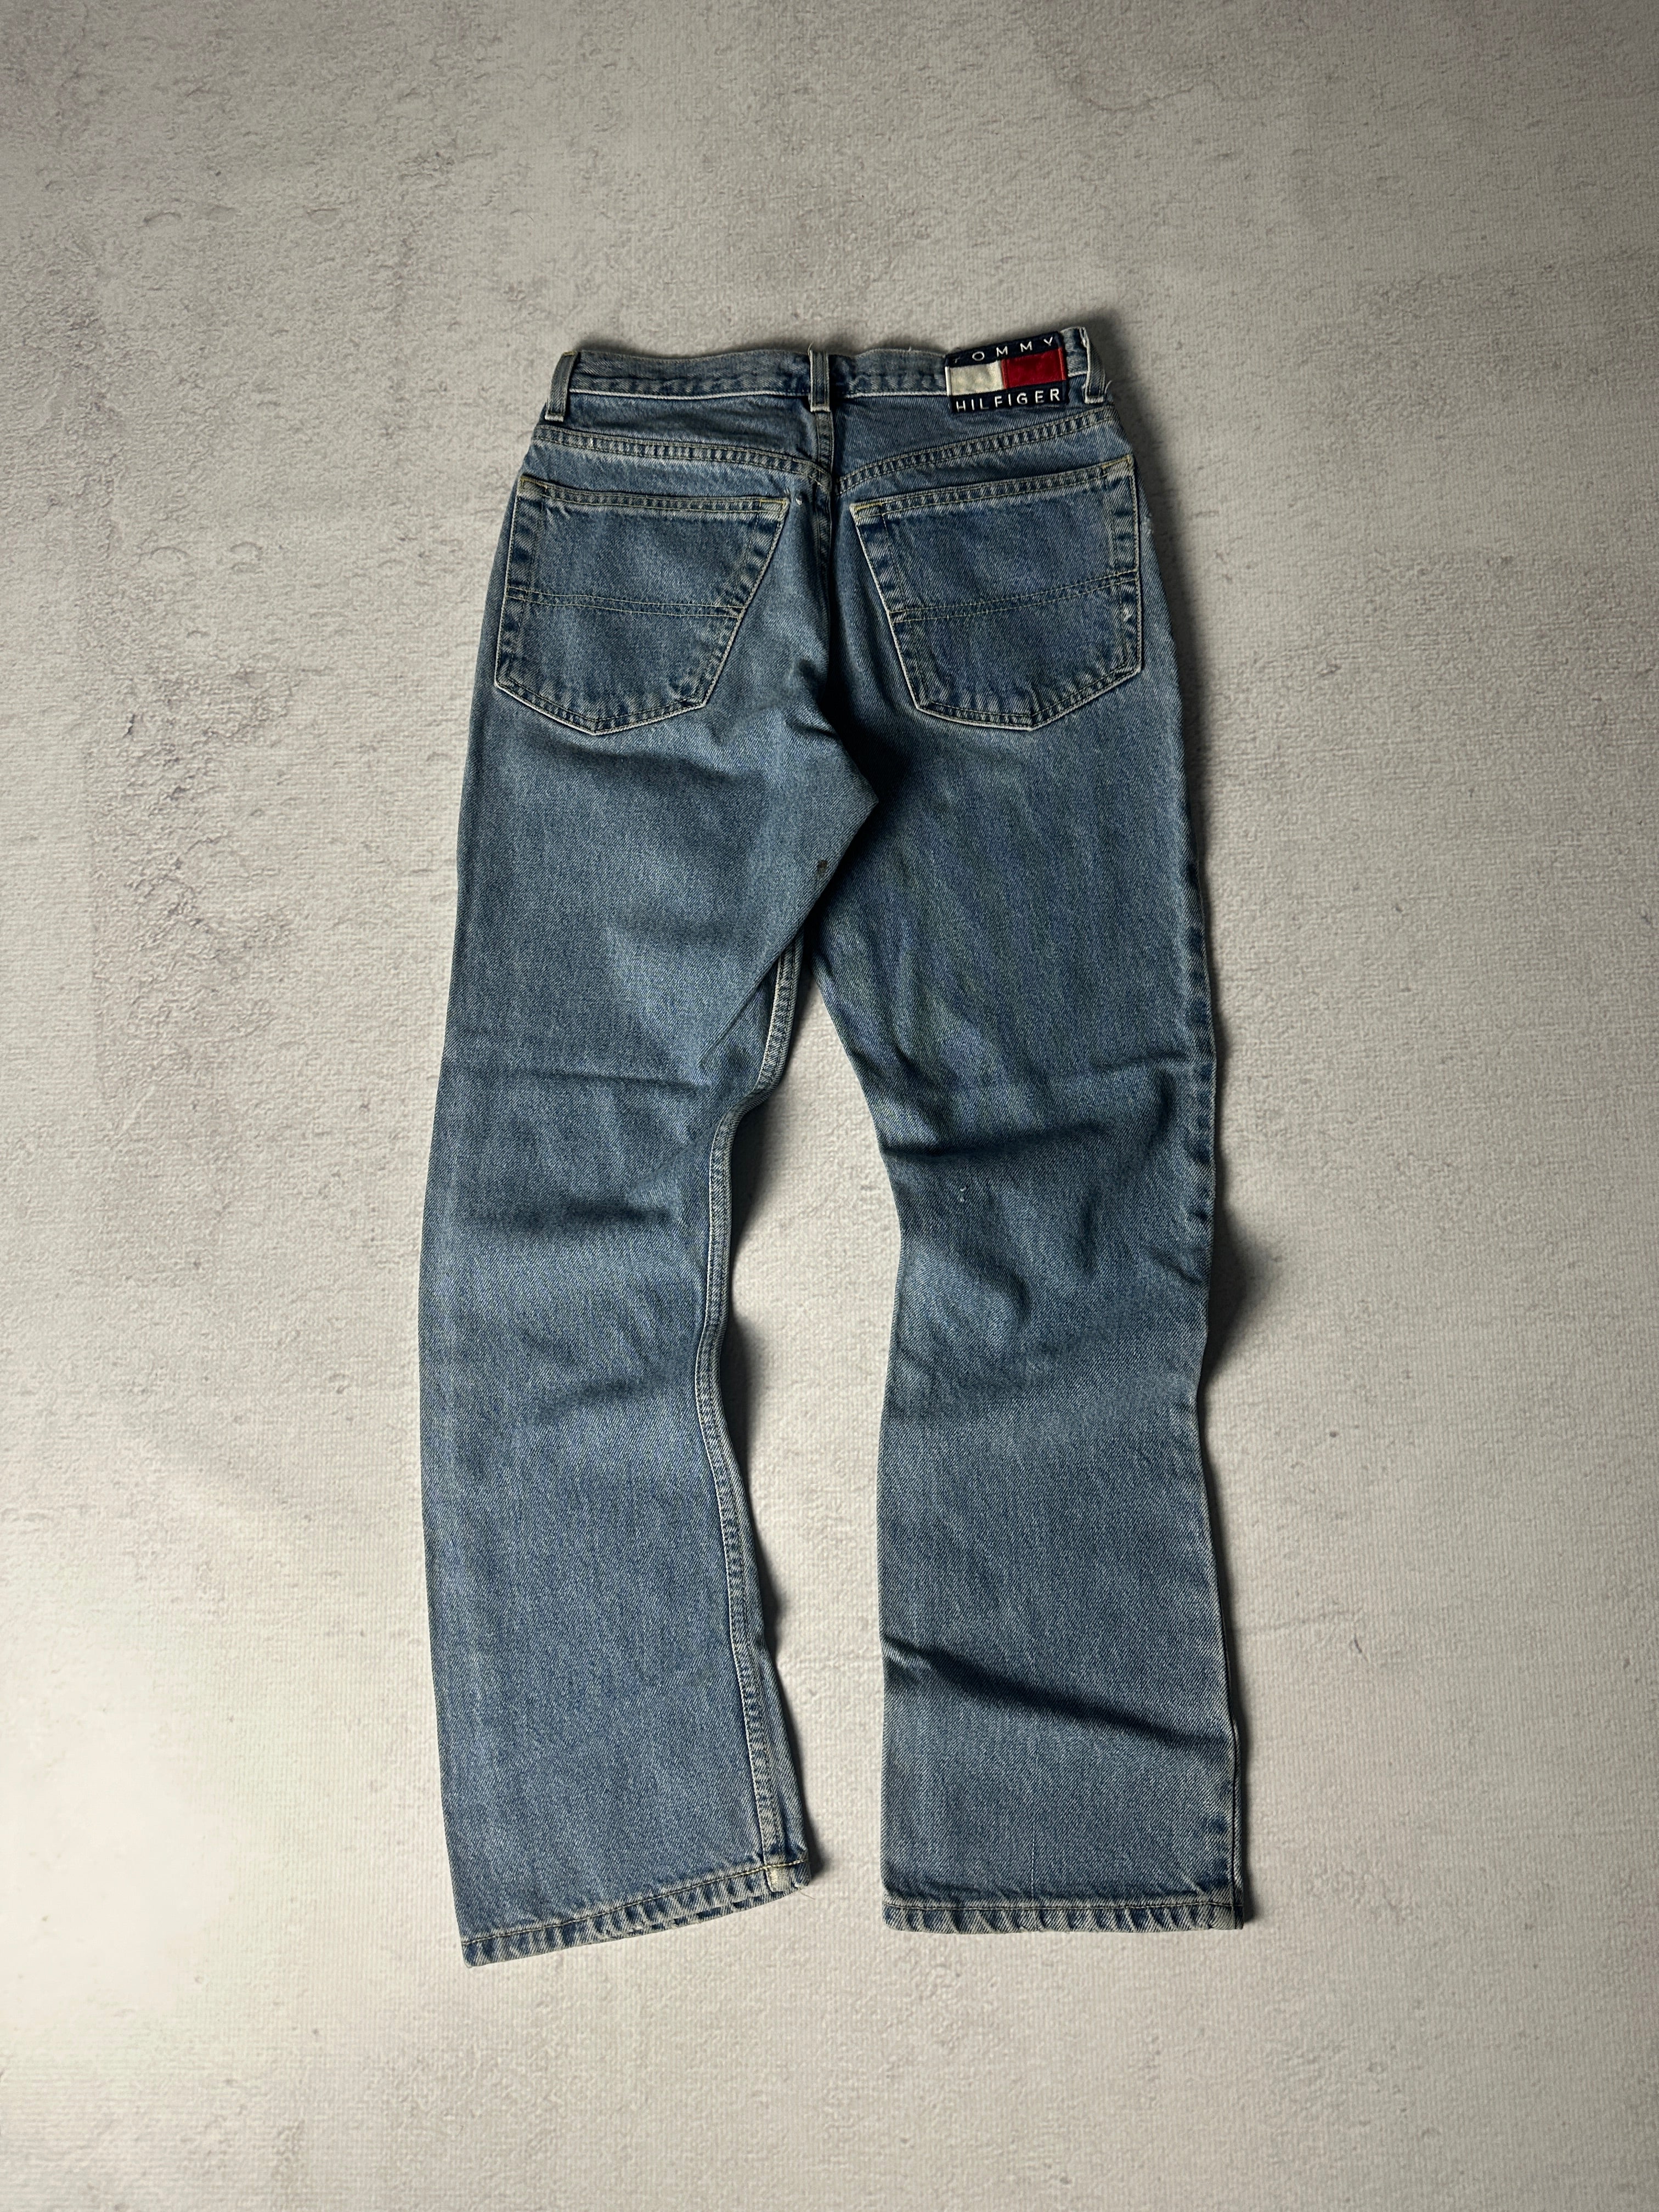 Vintage Tommy Hilfiger Jeans - Women's 30W30L